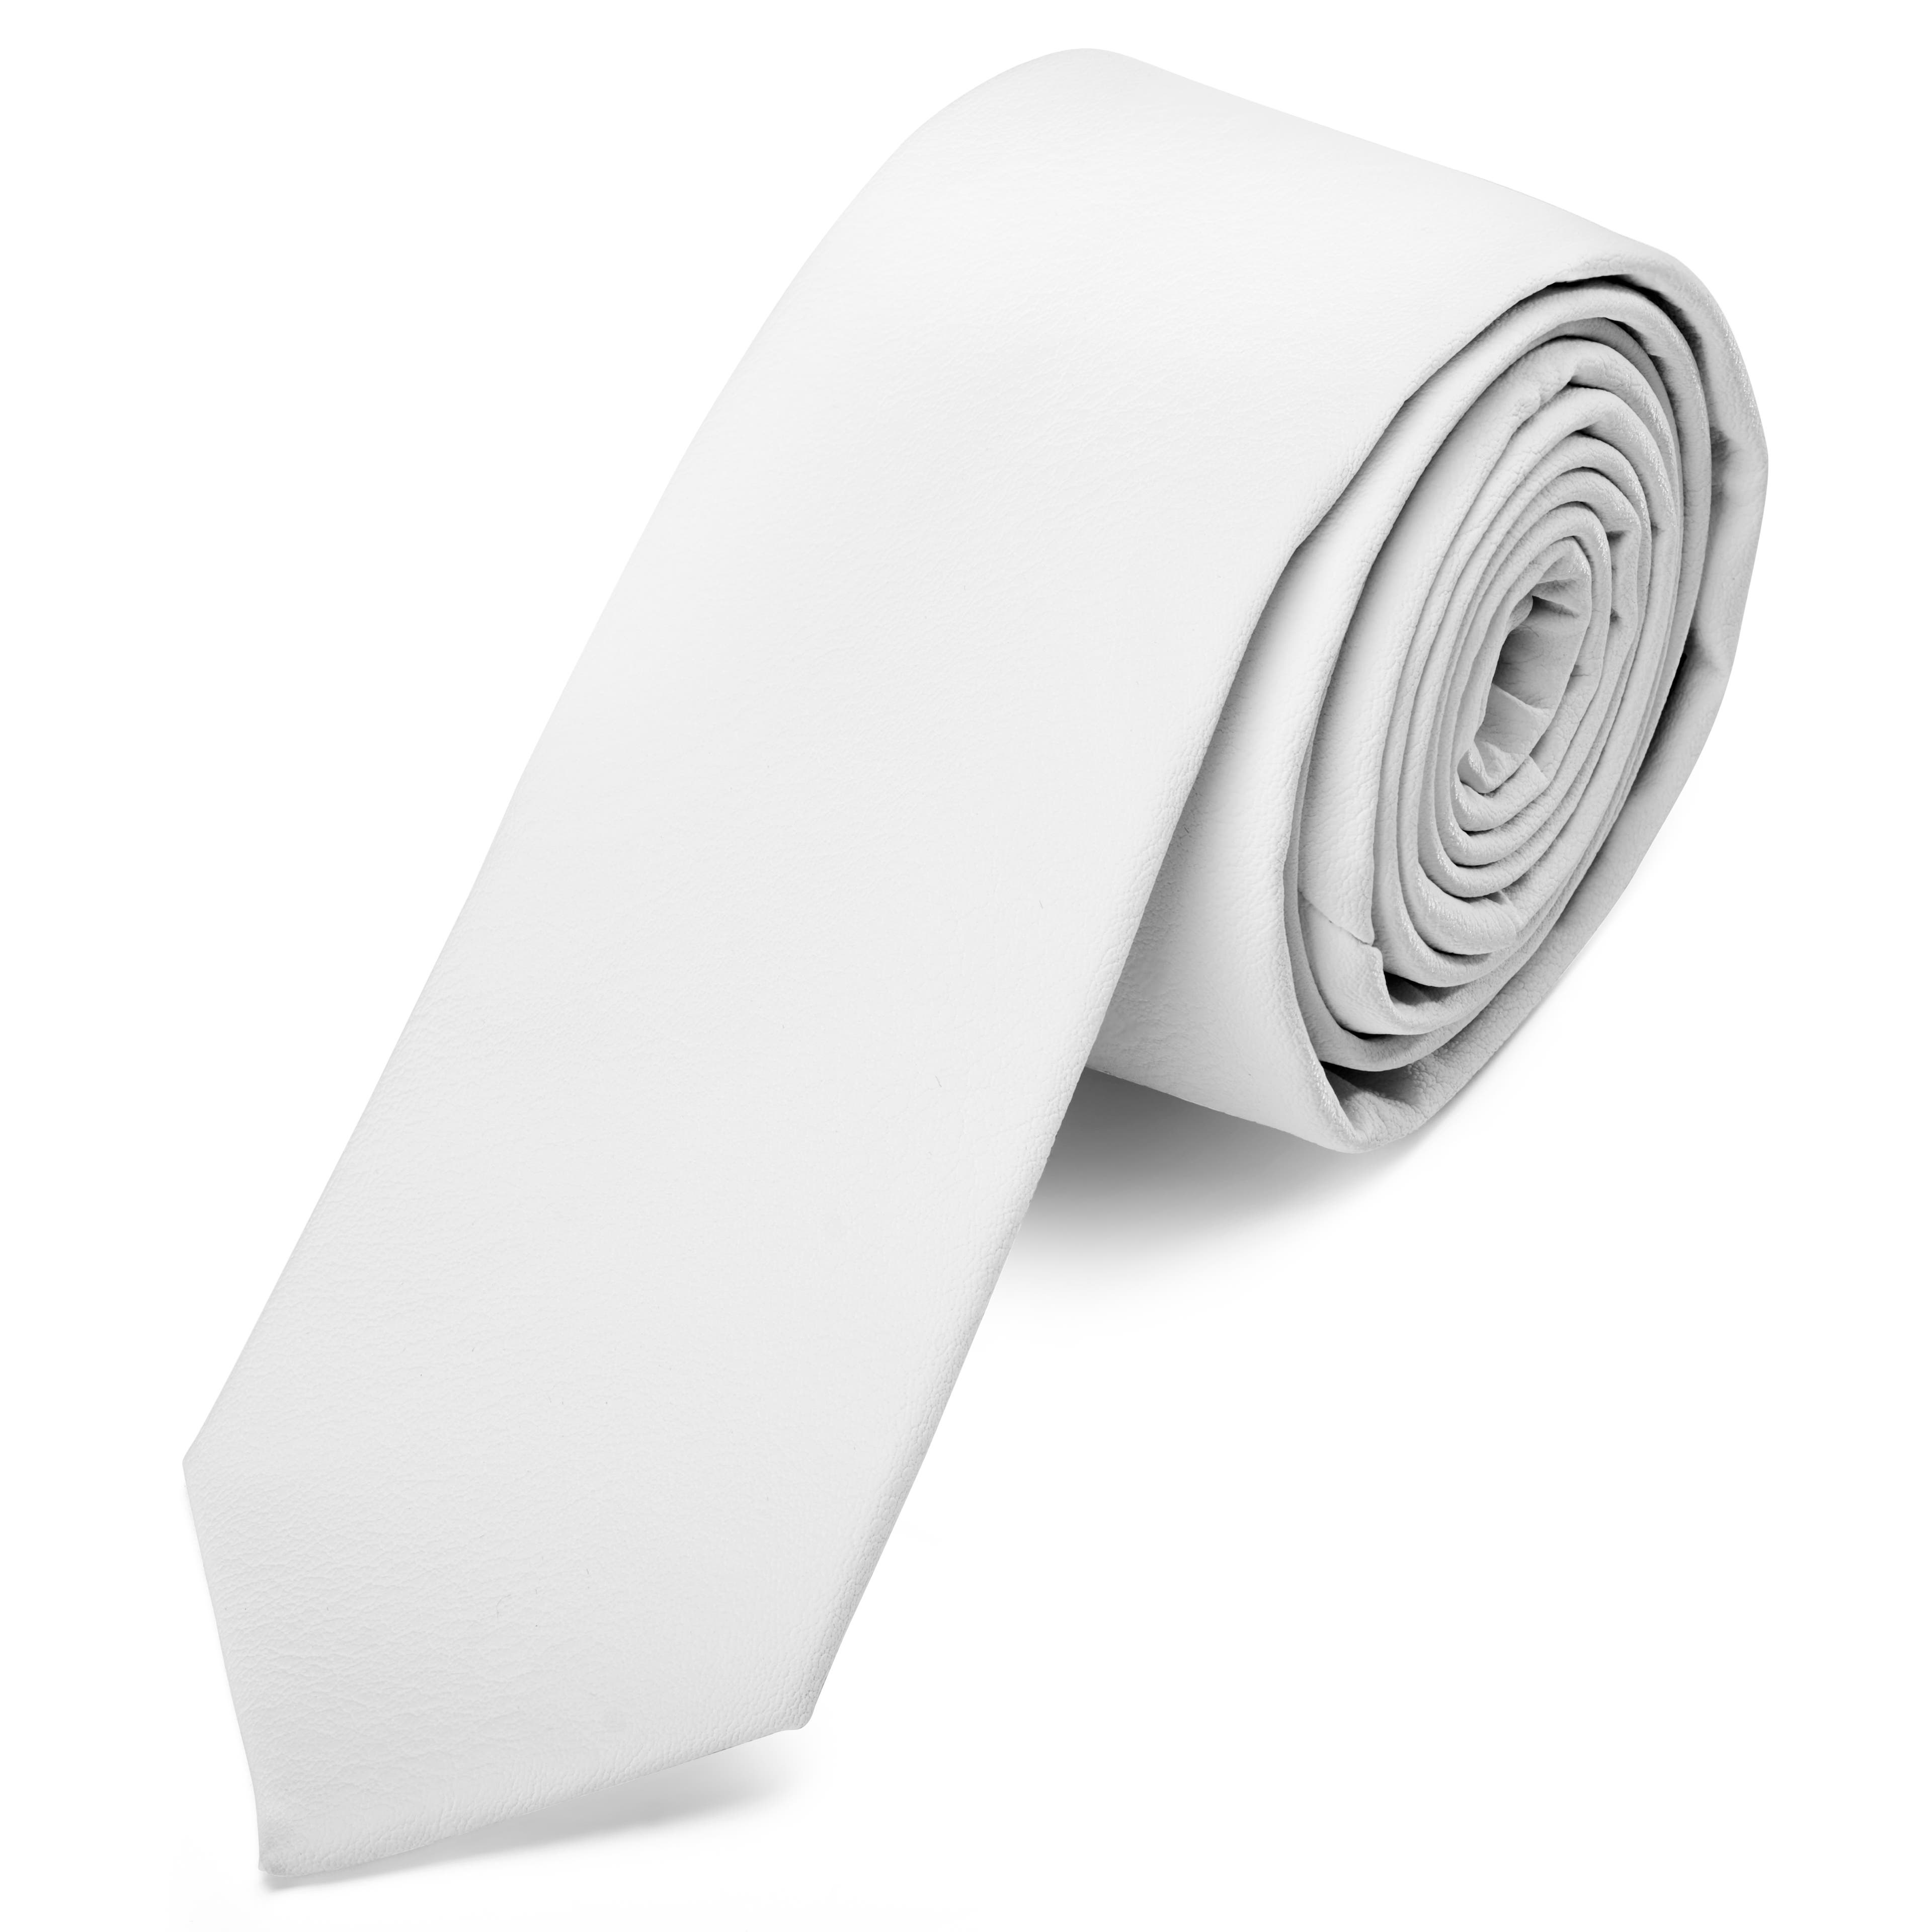 Corbata estrecha de cuero sintético blanca